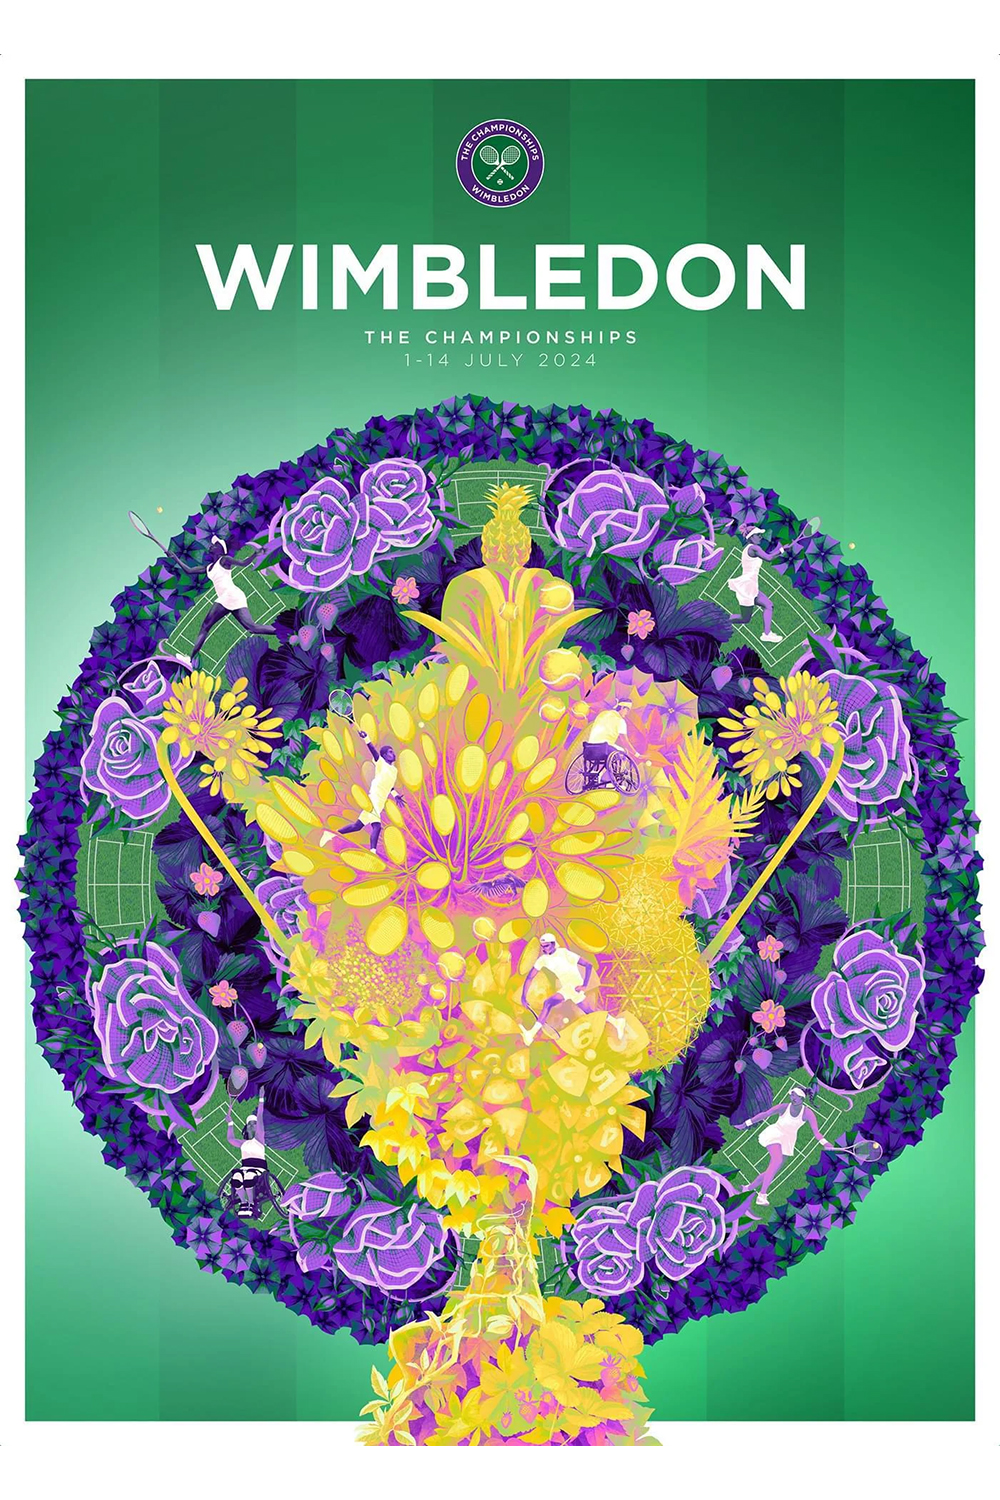 The Wimbledon 2024 poster